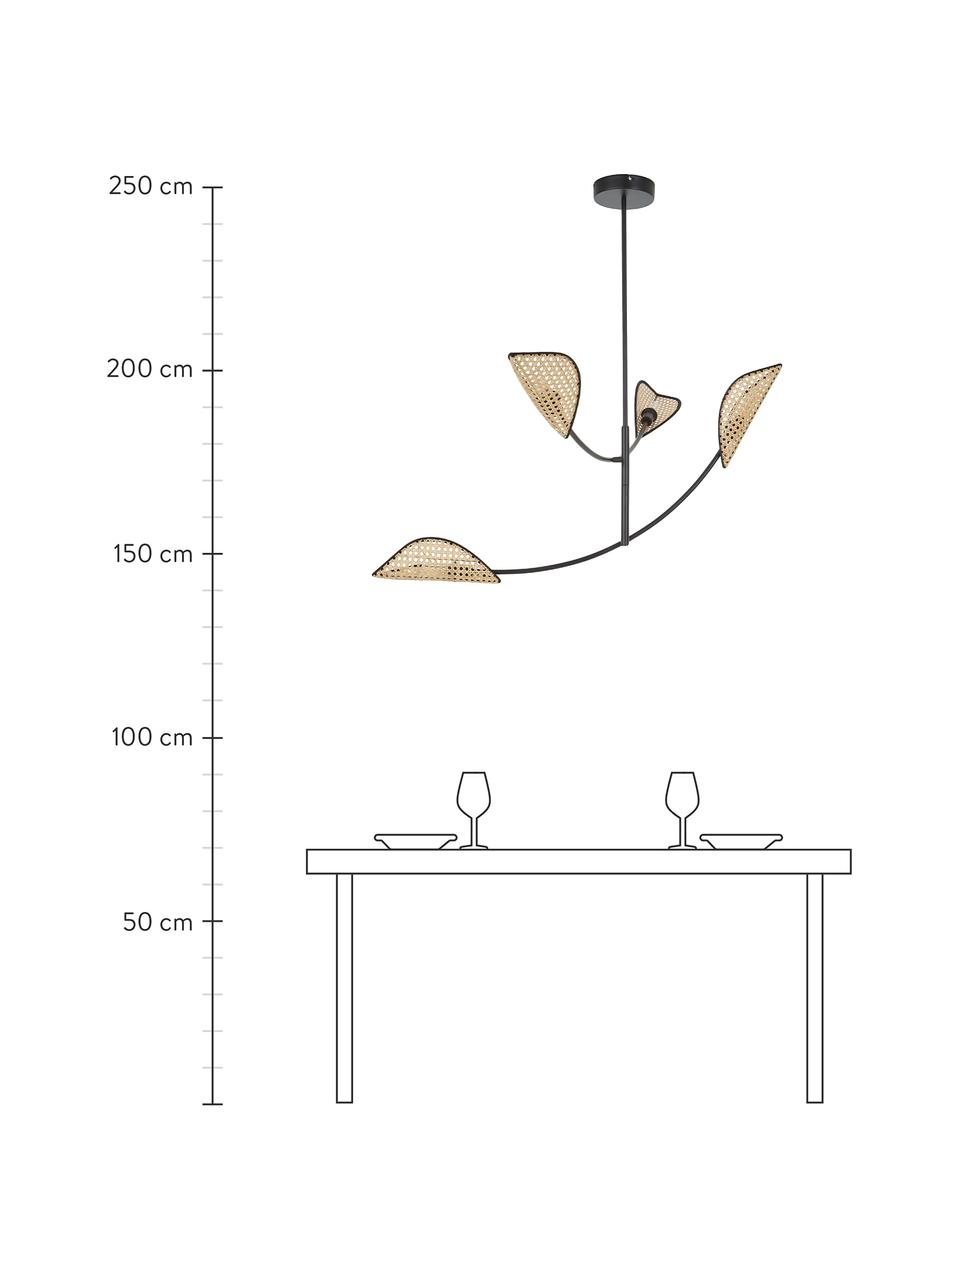 Grote hanglamp Freja van Weens vlechtwerk, Baldakijn: gepoedercoat metaal, Zwart, rotan, B 112 x H 89 cm